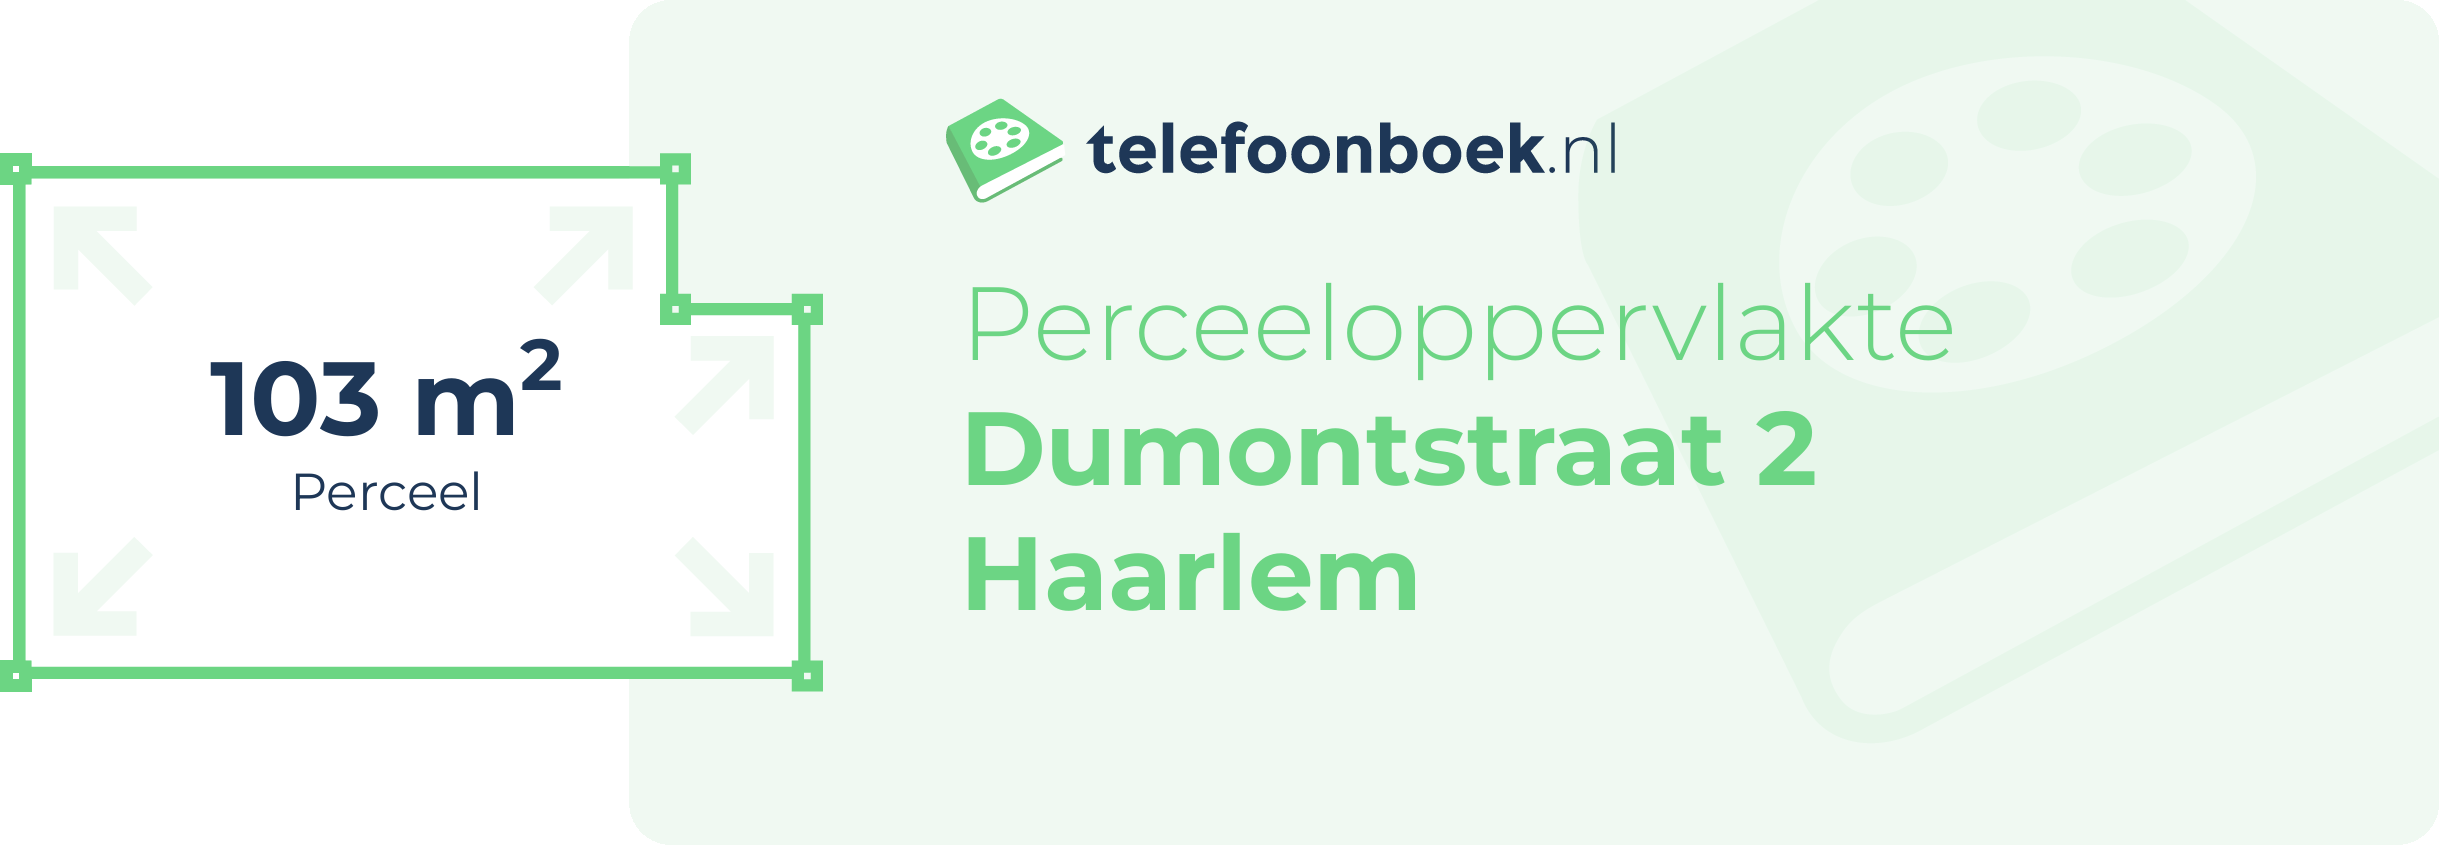 Perceeloppervlakte Dumontstraat 2 Haarlem